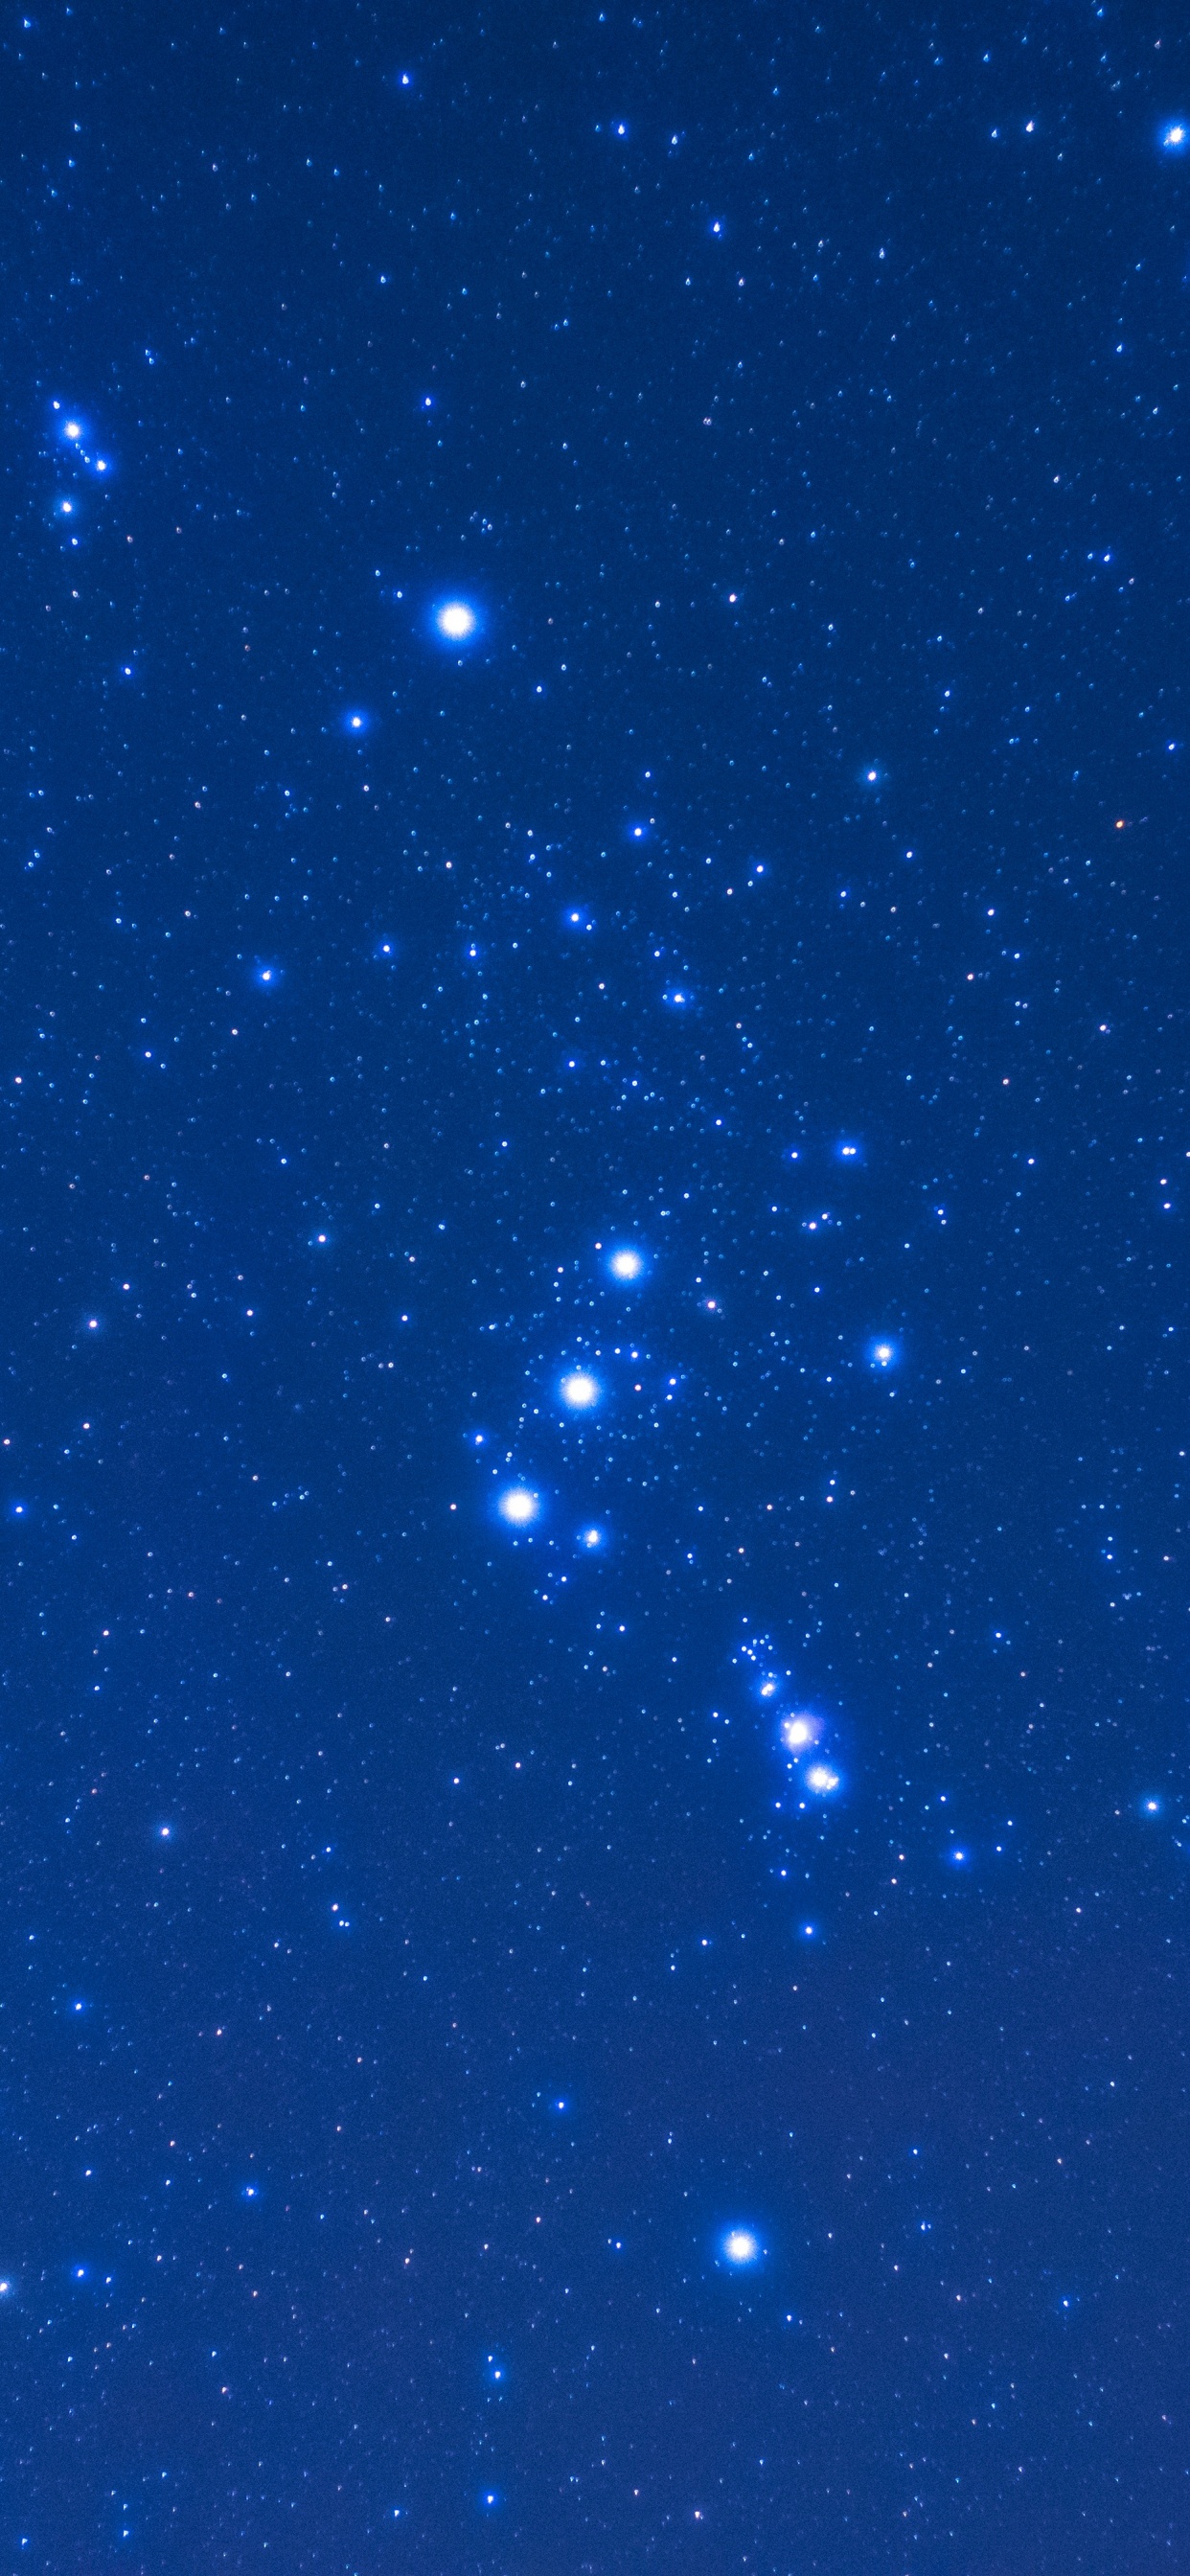 Étoiles Bleues et Blanches Dans le Ciel Bleu. Wallpaper in 1242x2688 Resolution